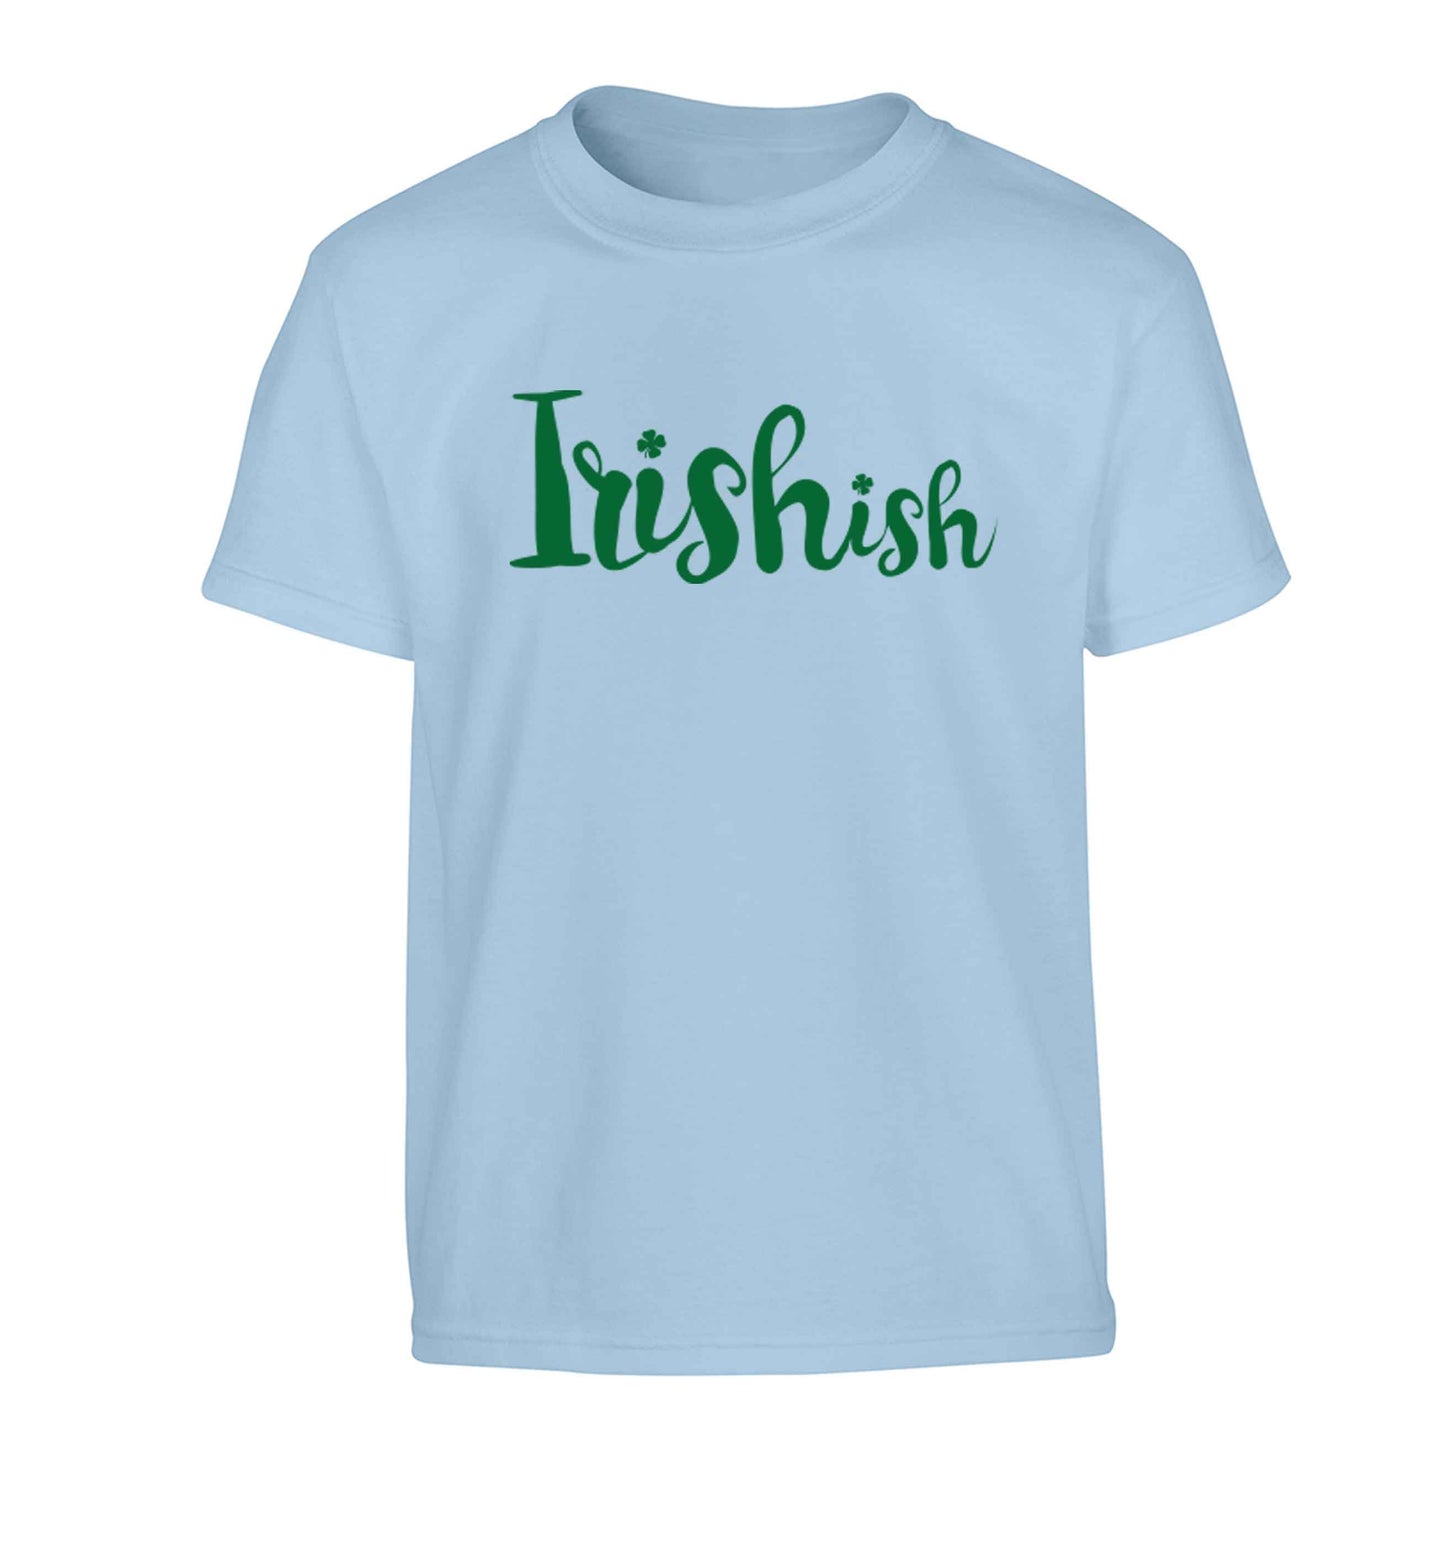 Irishish Children's light blue Tshirt 12-13 Years